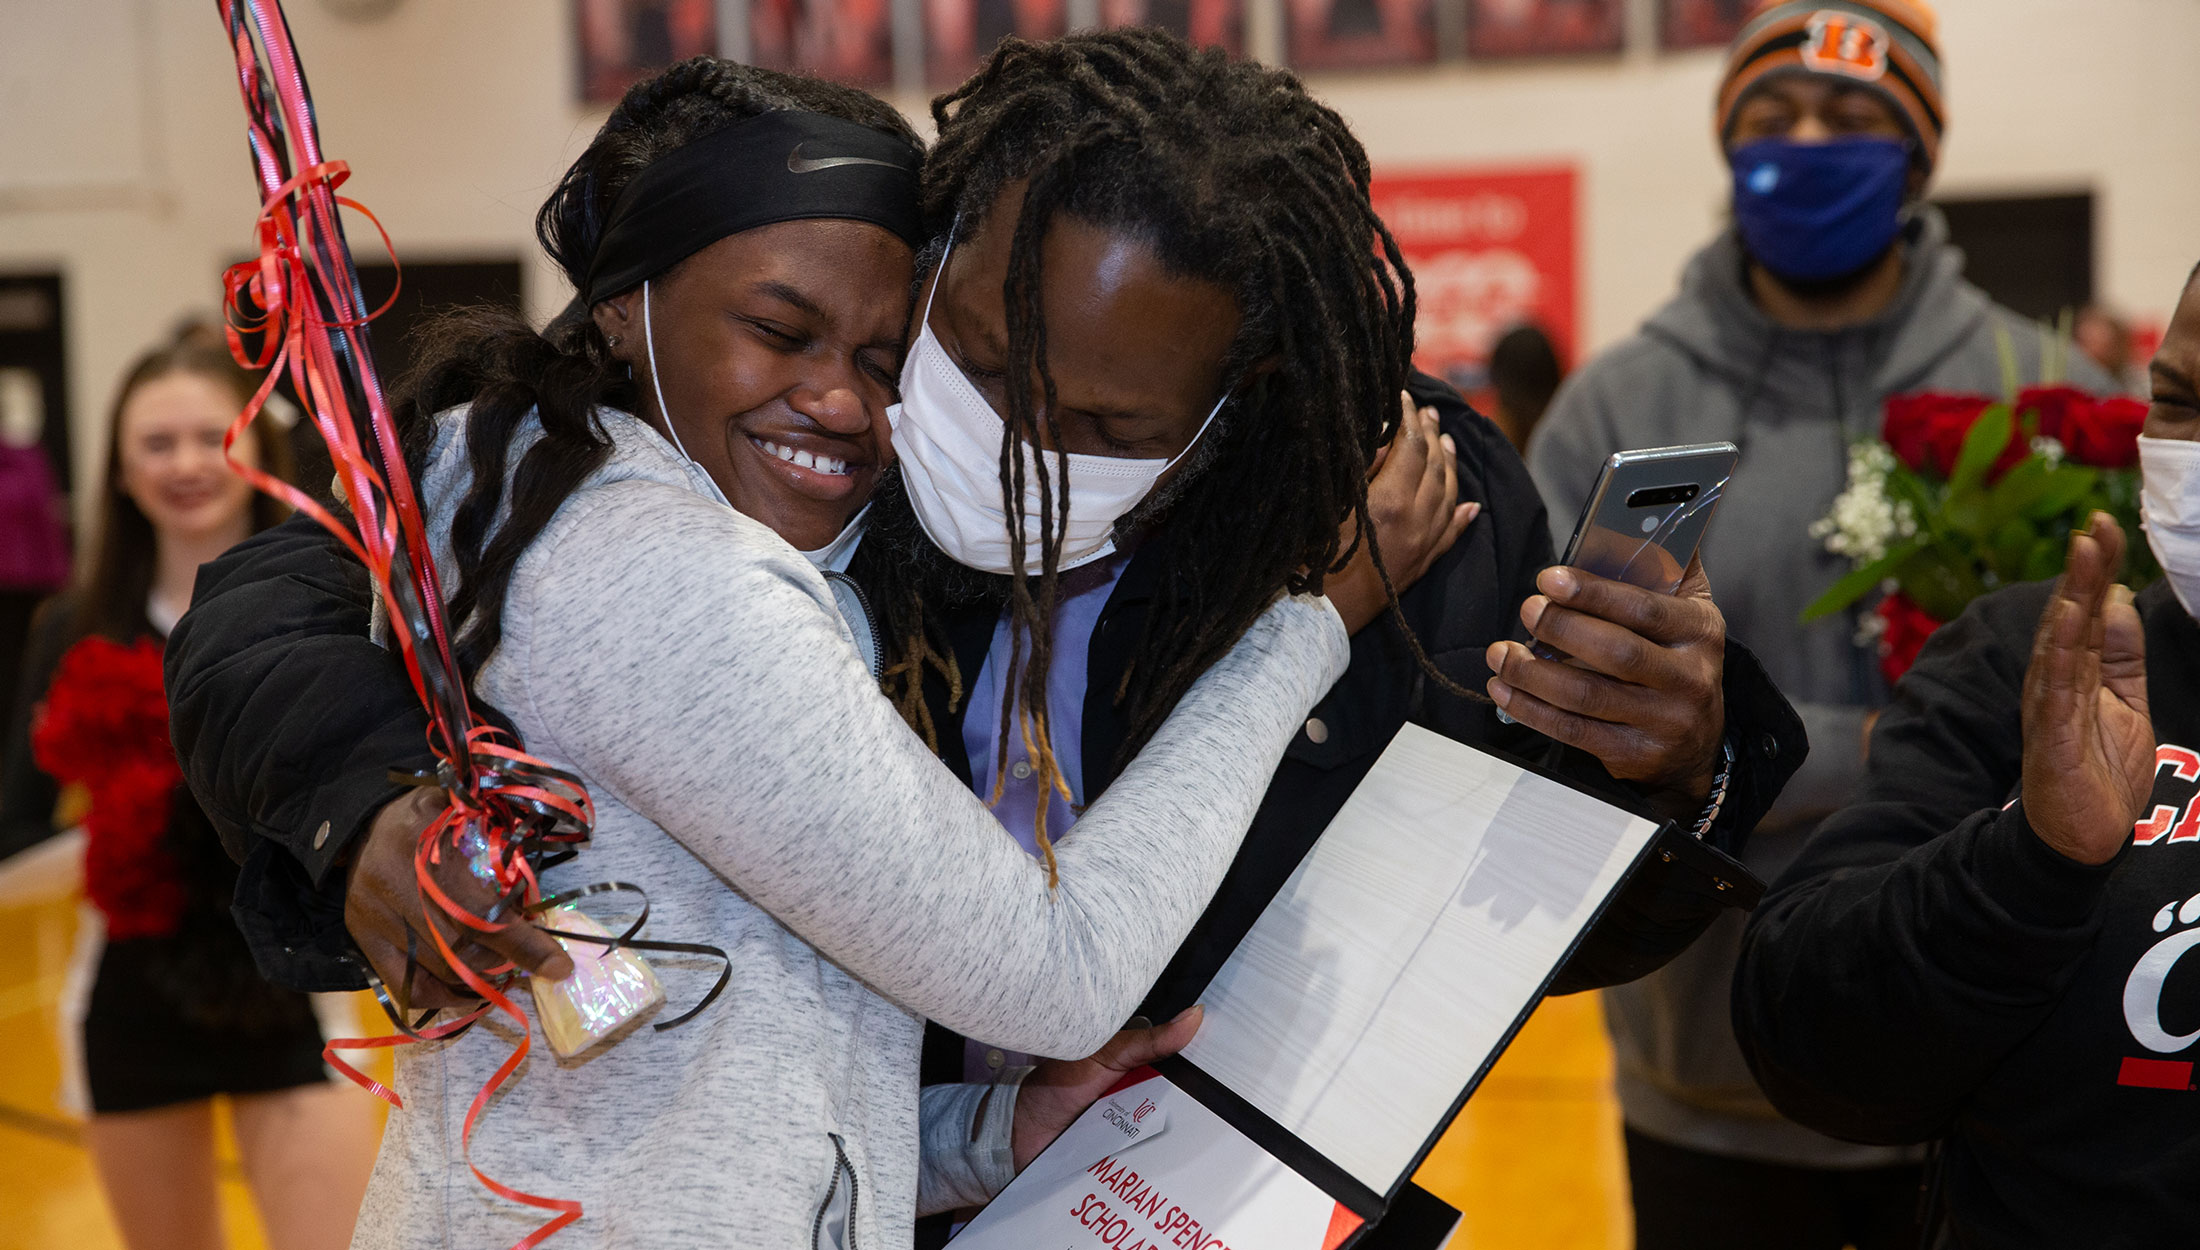 A future UC student shares a celebratory embrace